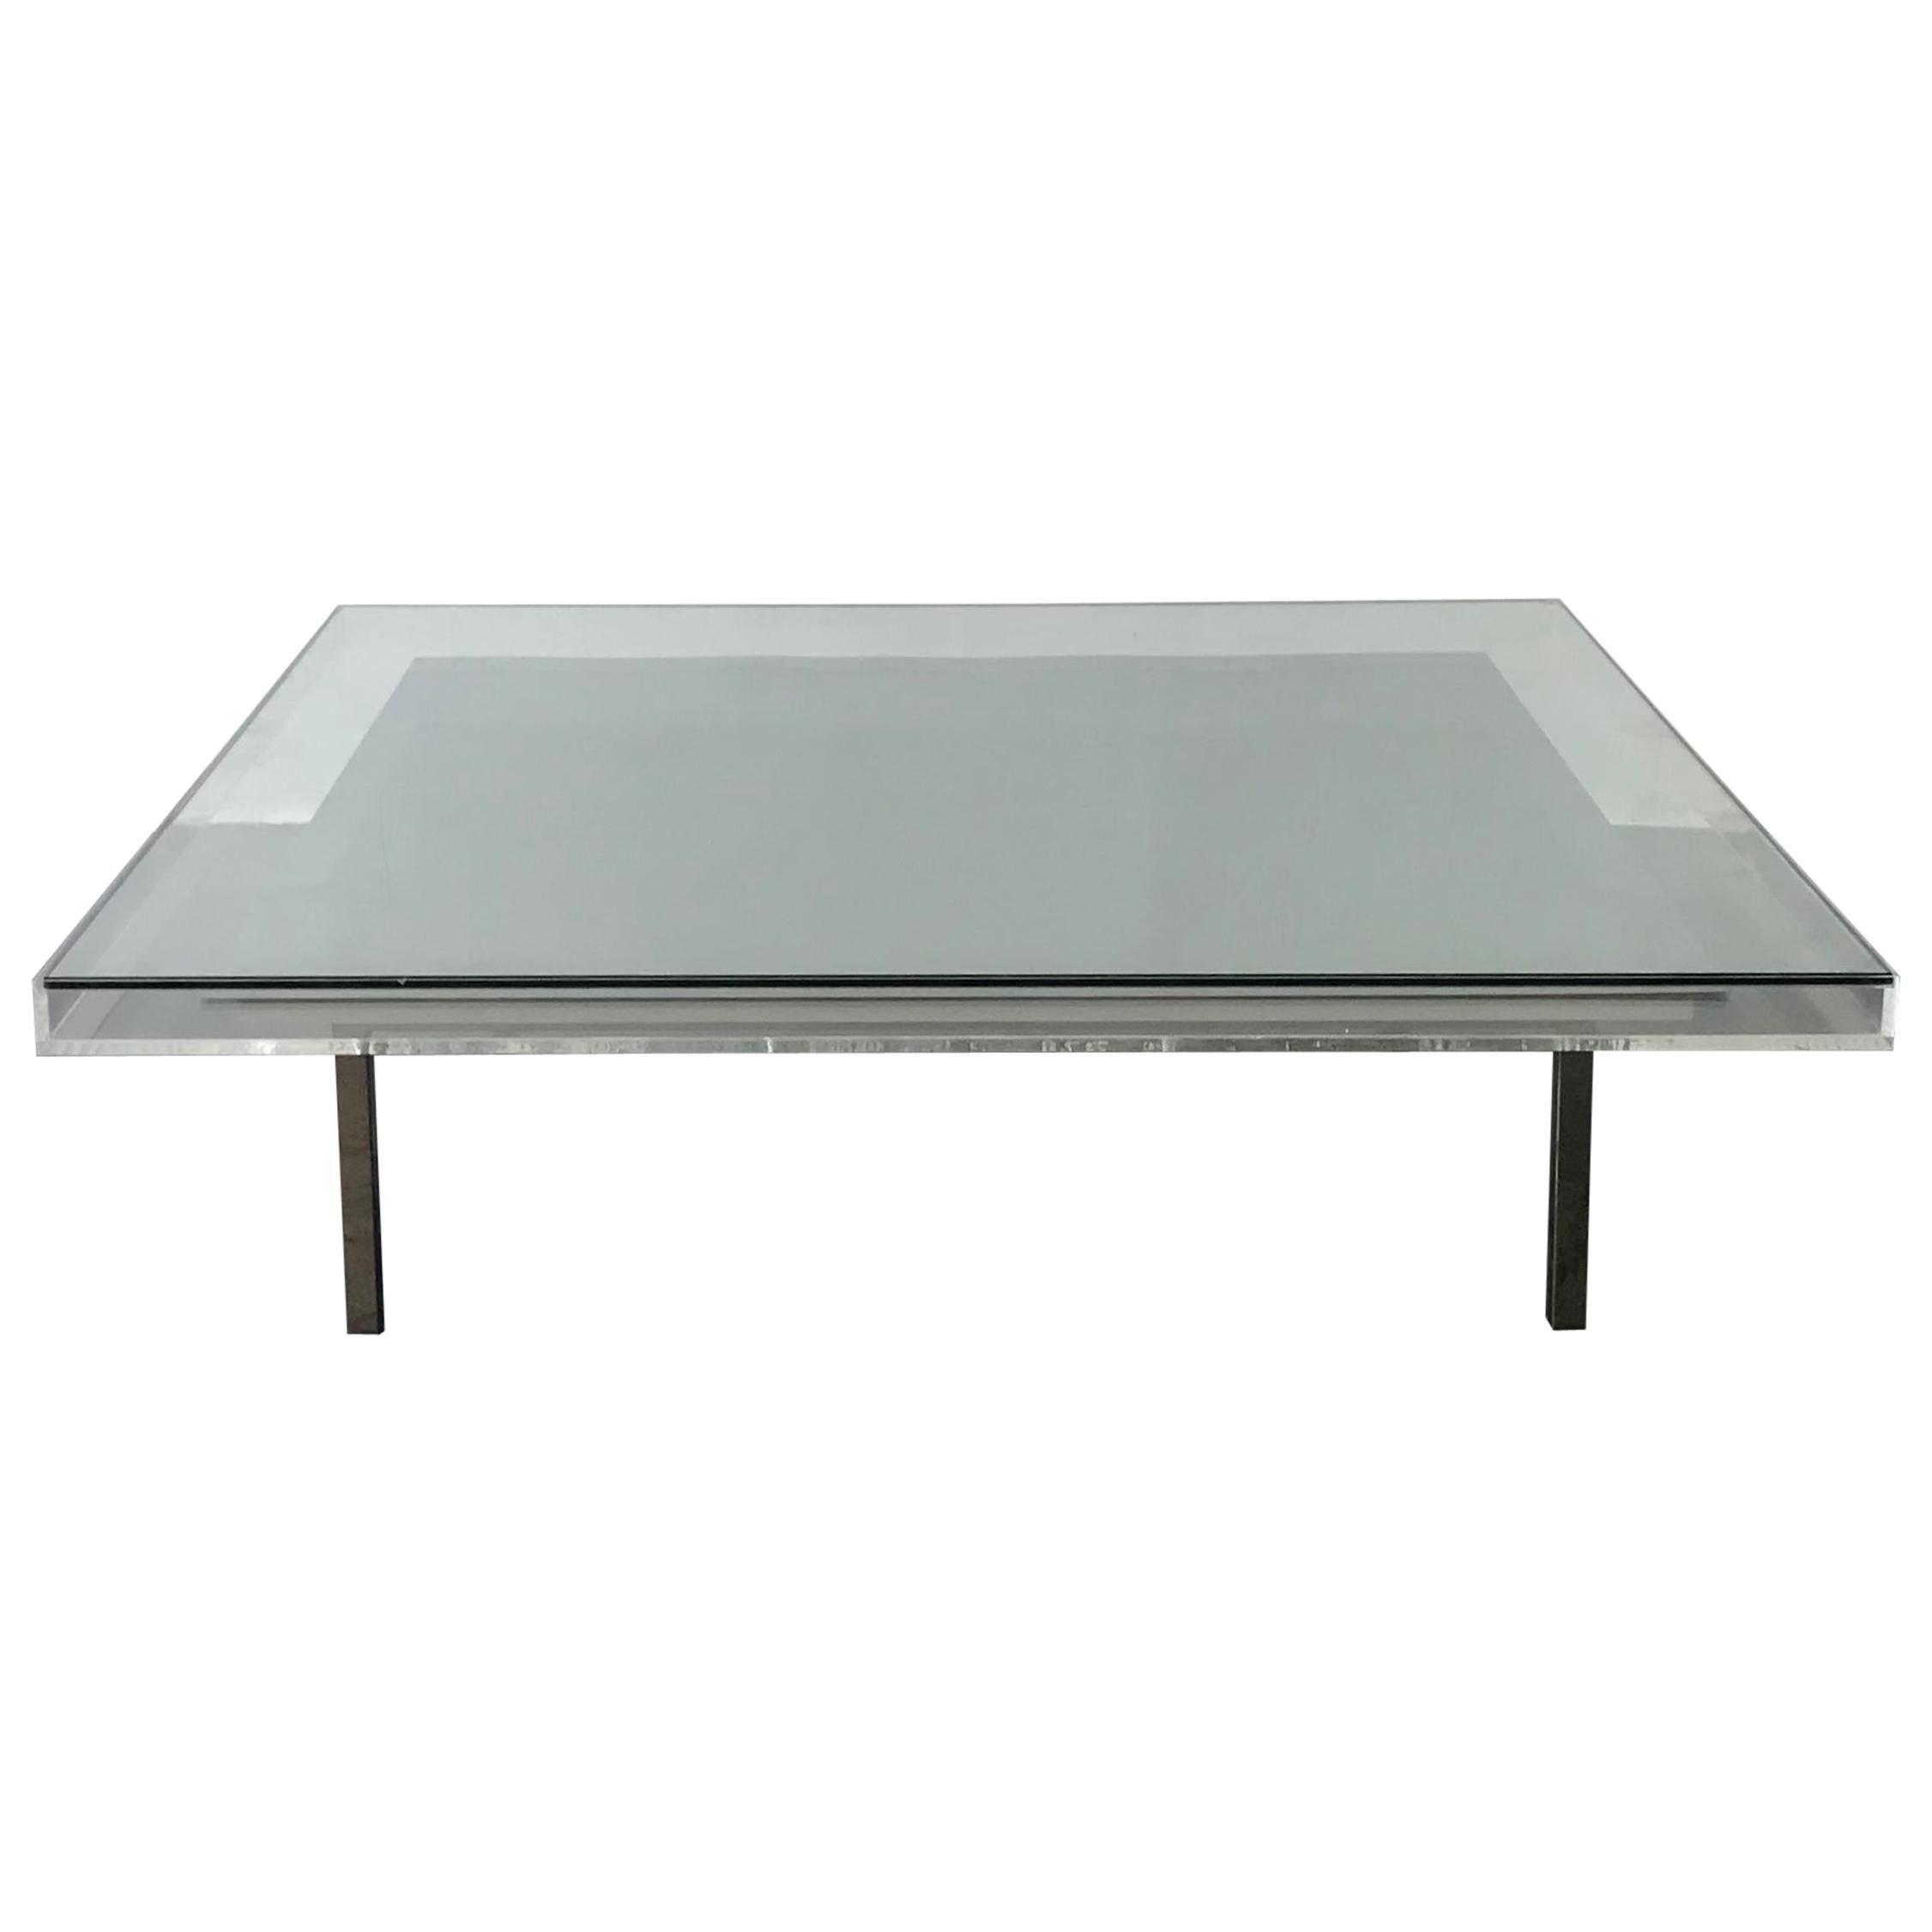 Table basse moderne sur mesure en verre et pigments acryliques avec cadre en acier brossé